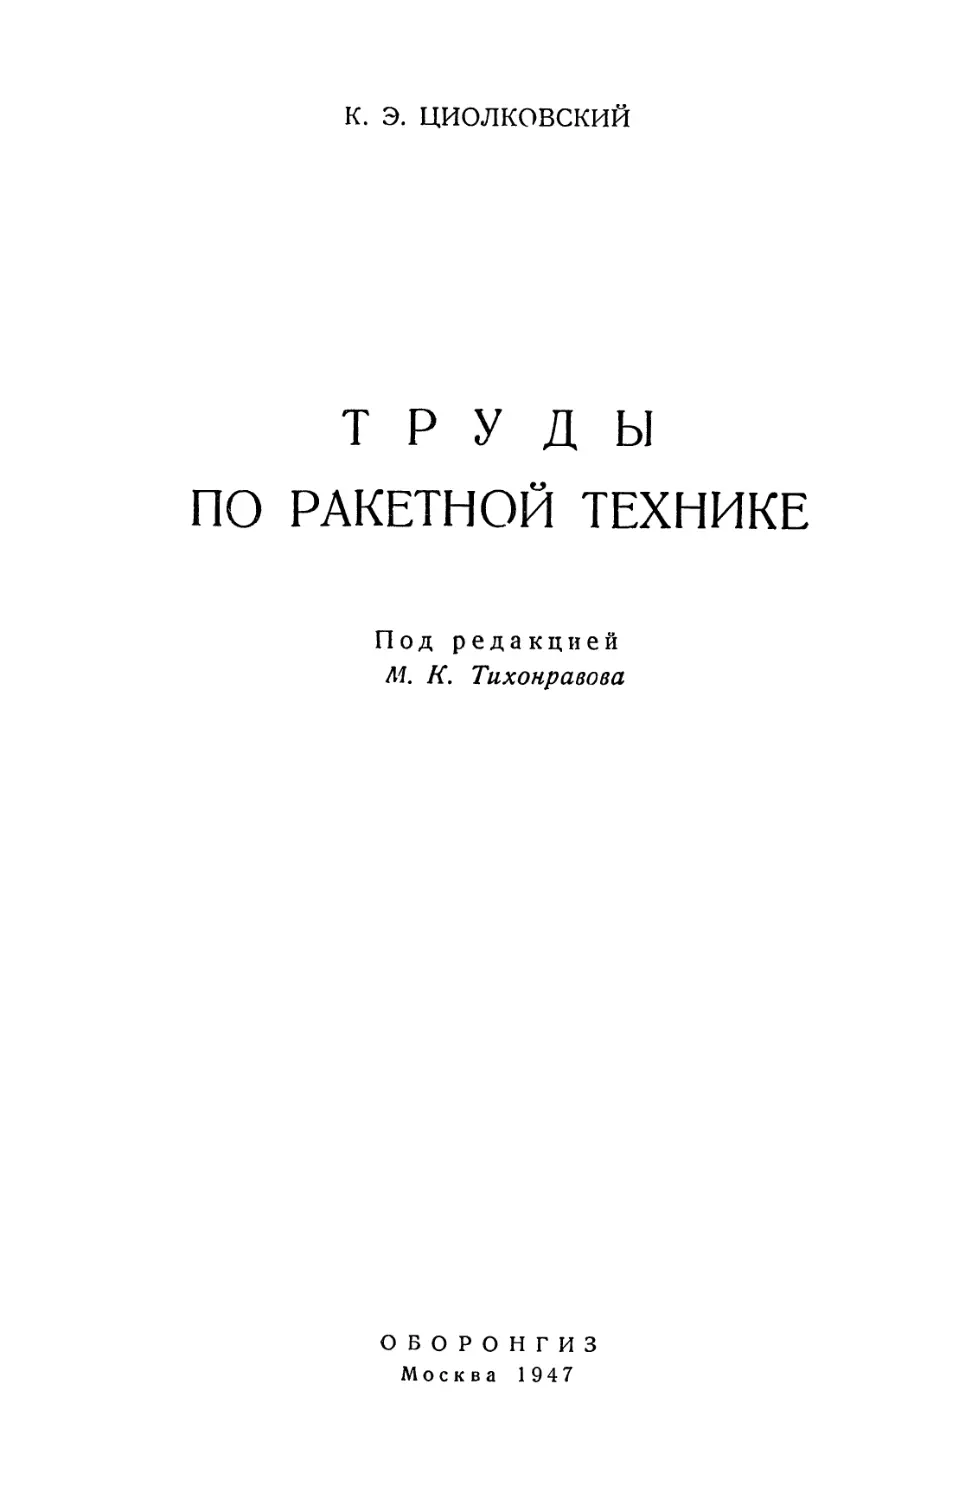 Циолковский К.Э. Труды по ракетной технике - 1947